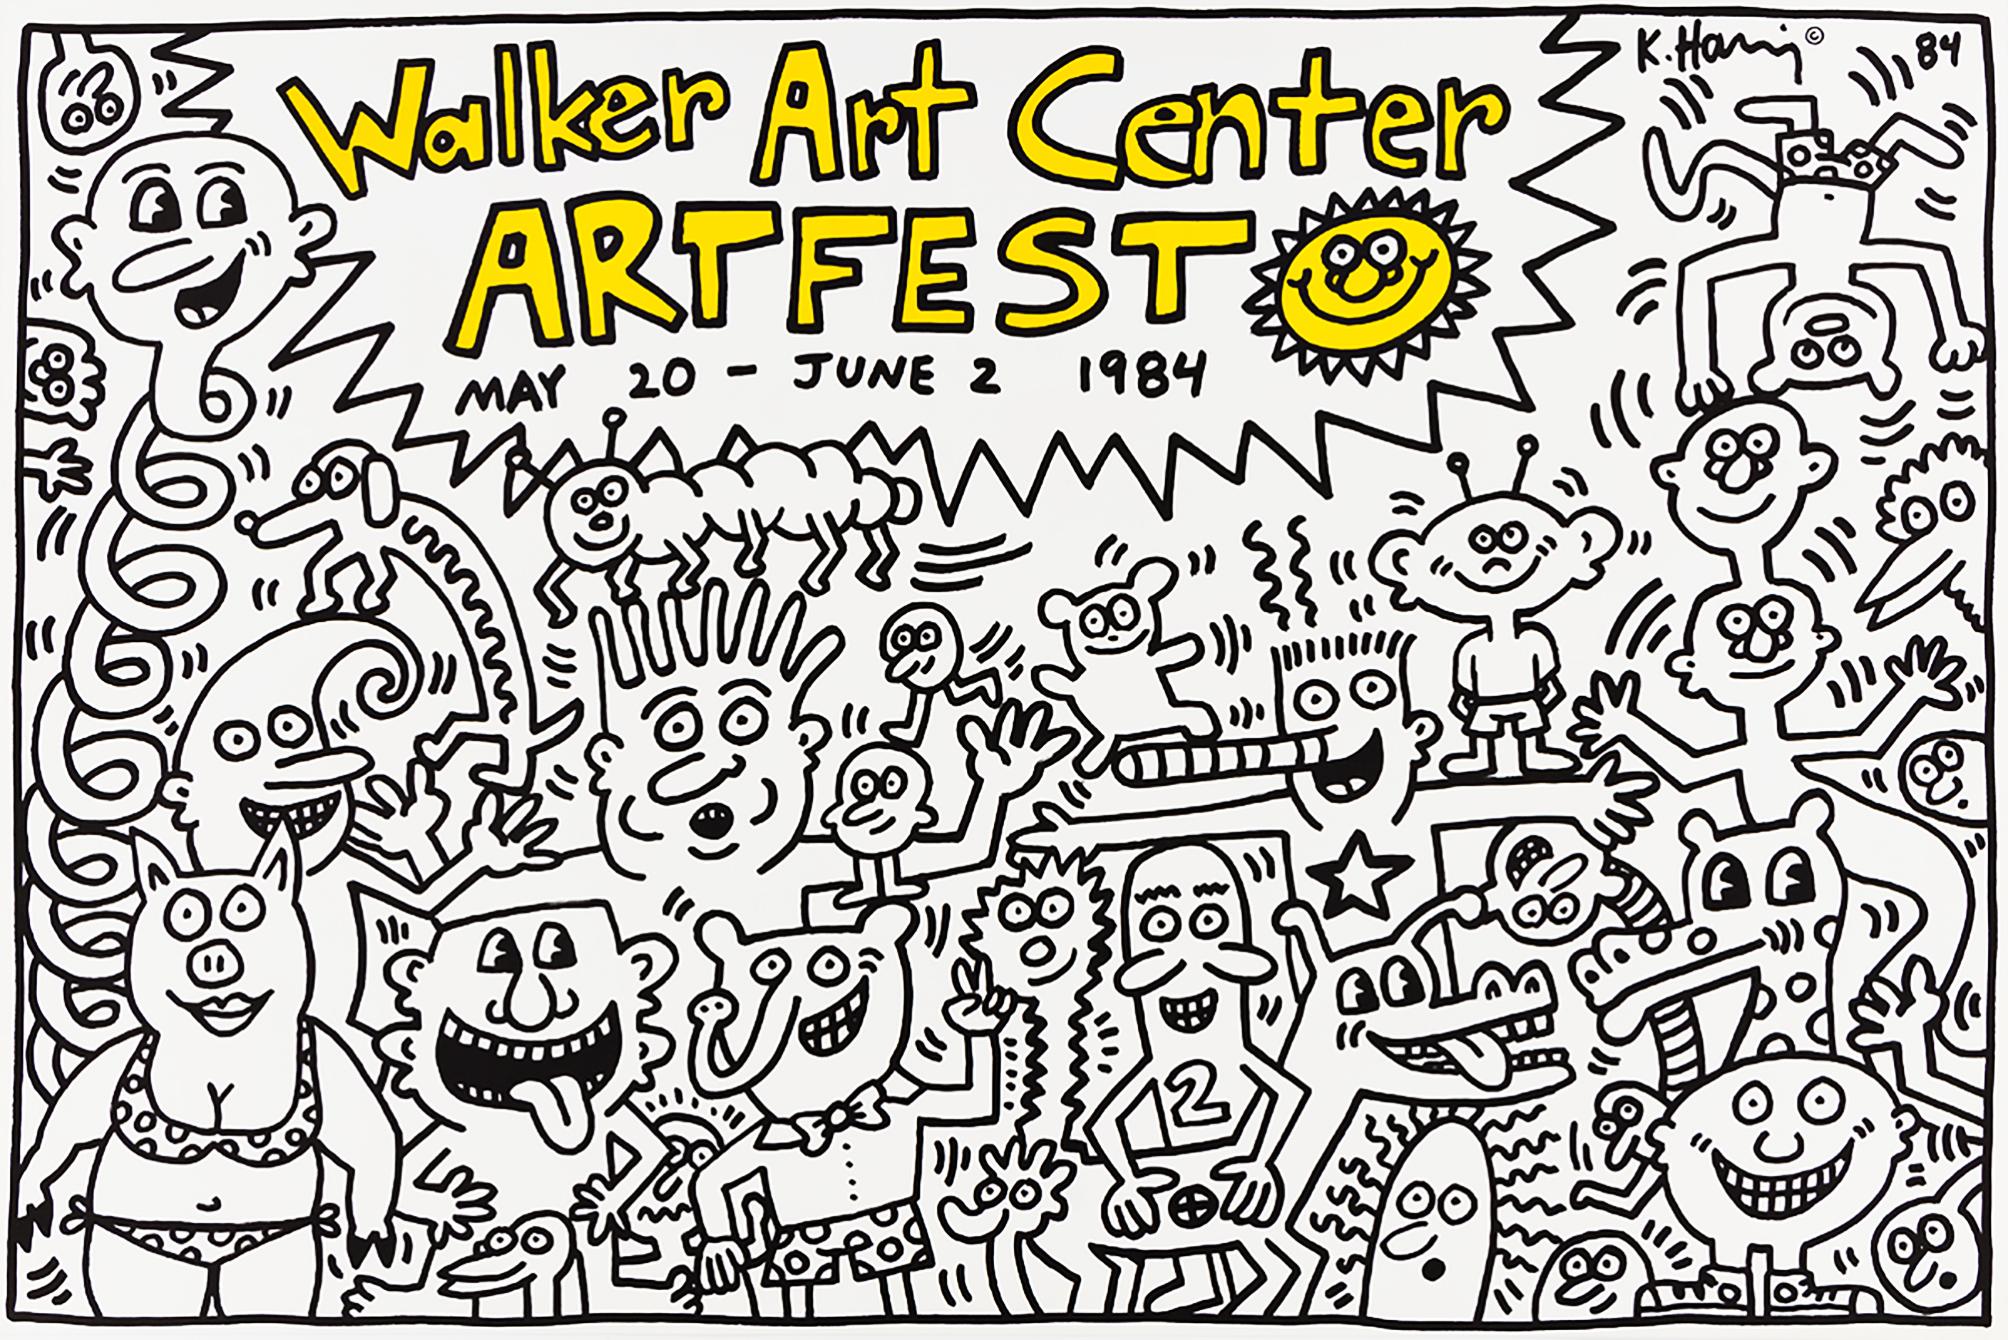 Keith Haring Walker Art Center Artfest 1984 :
"En mars 1984, Haring avait réalisé une peinture murale pour le nouveau centre éducatif du Walker Art Center alors qu'il était artiste en résidence à Minneapolis. Il a donné des cours de peinture aux